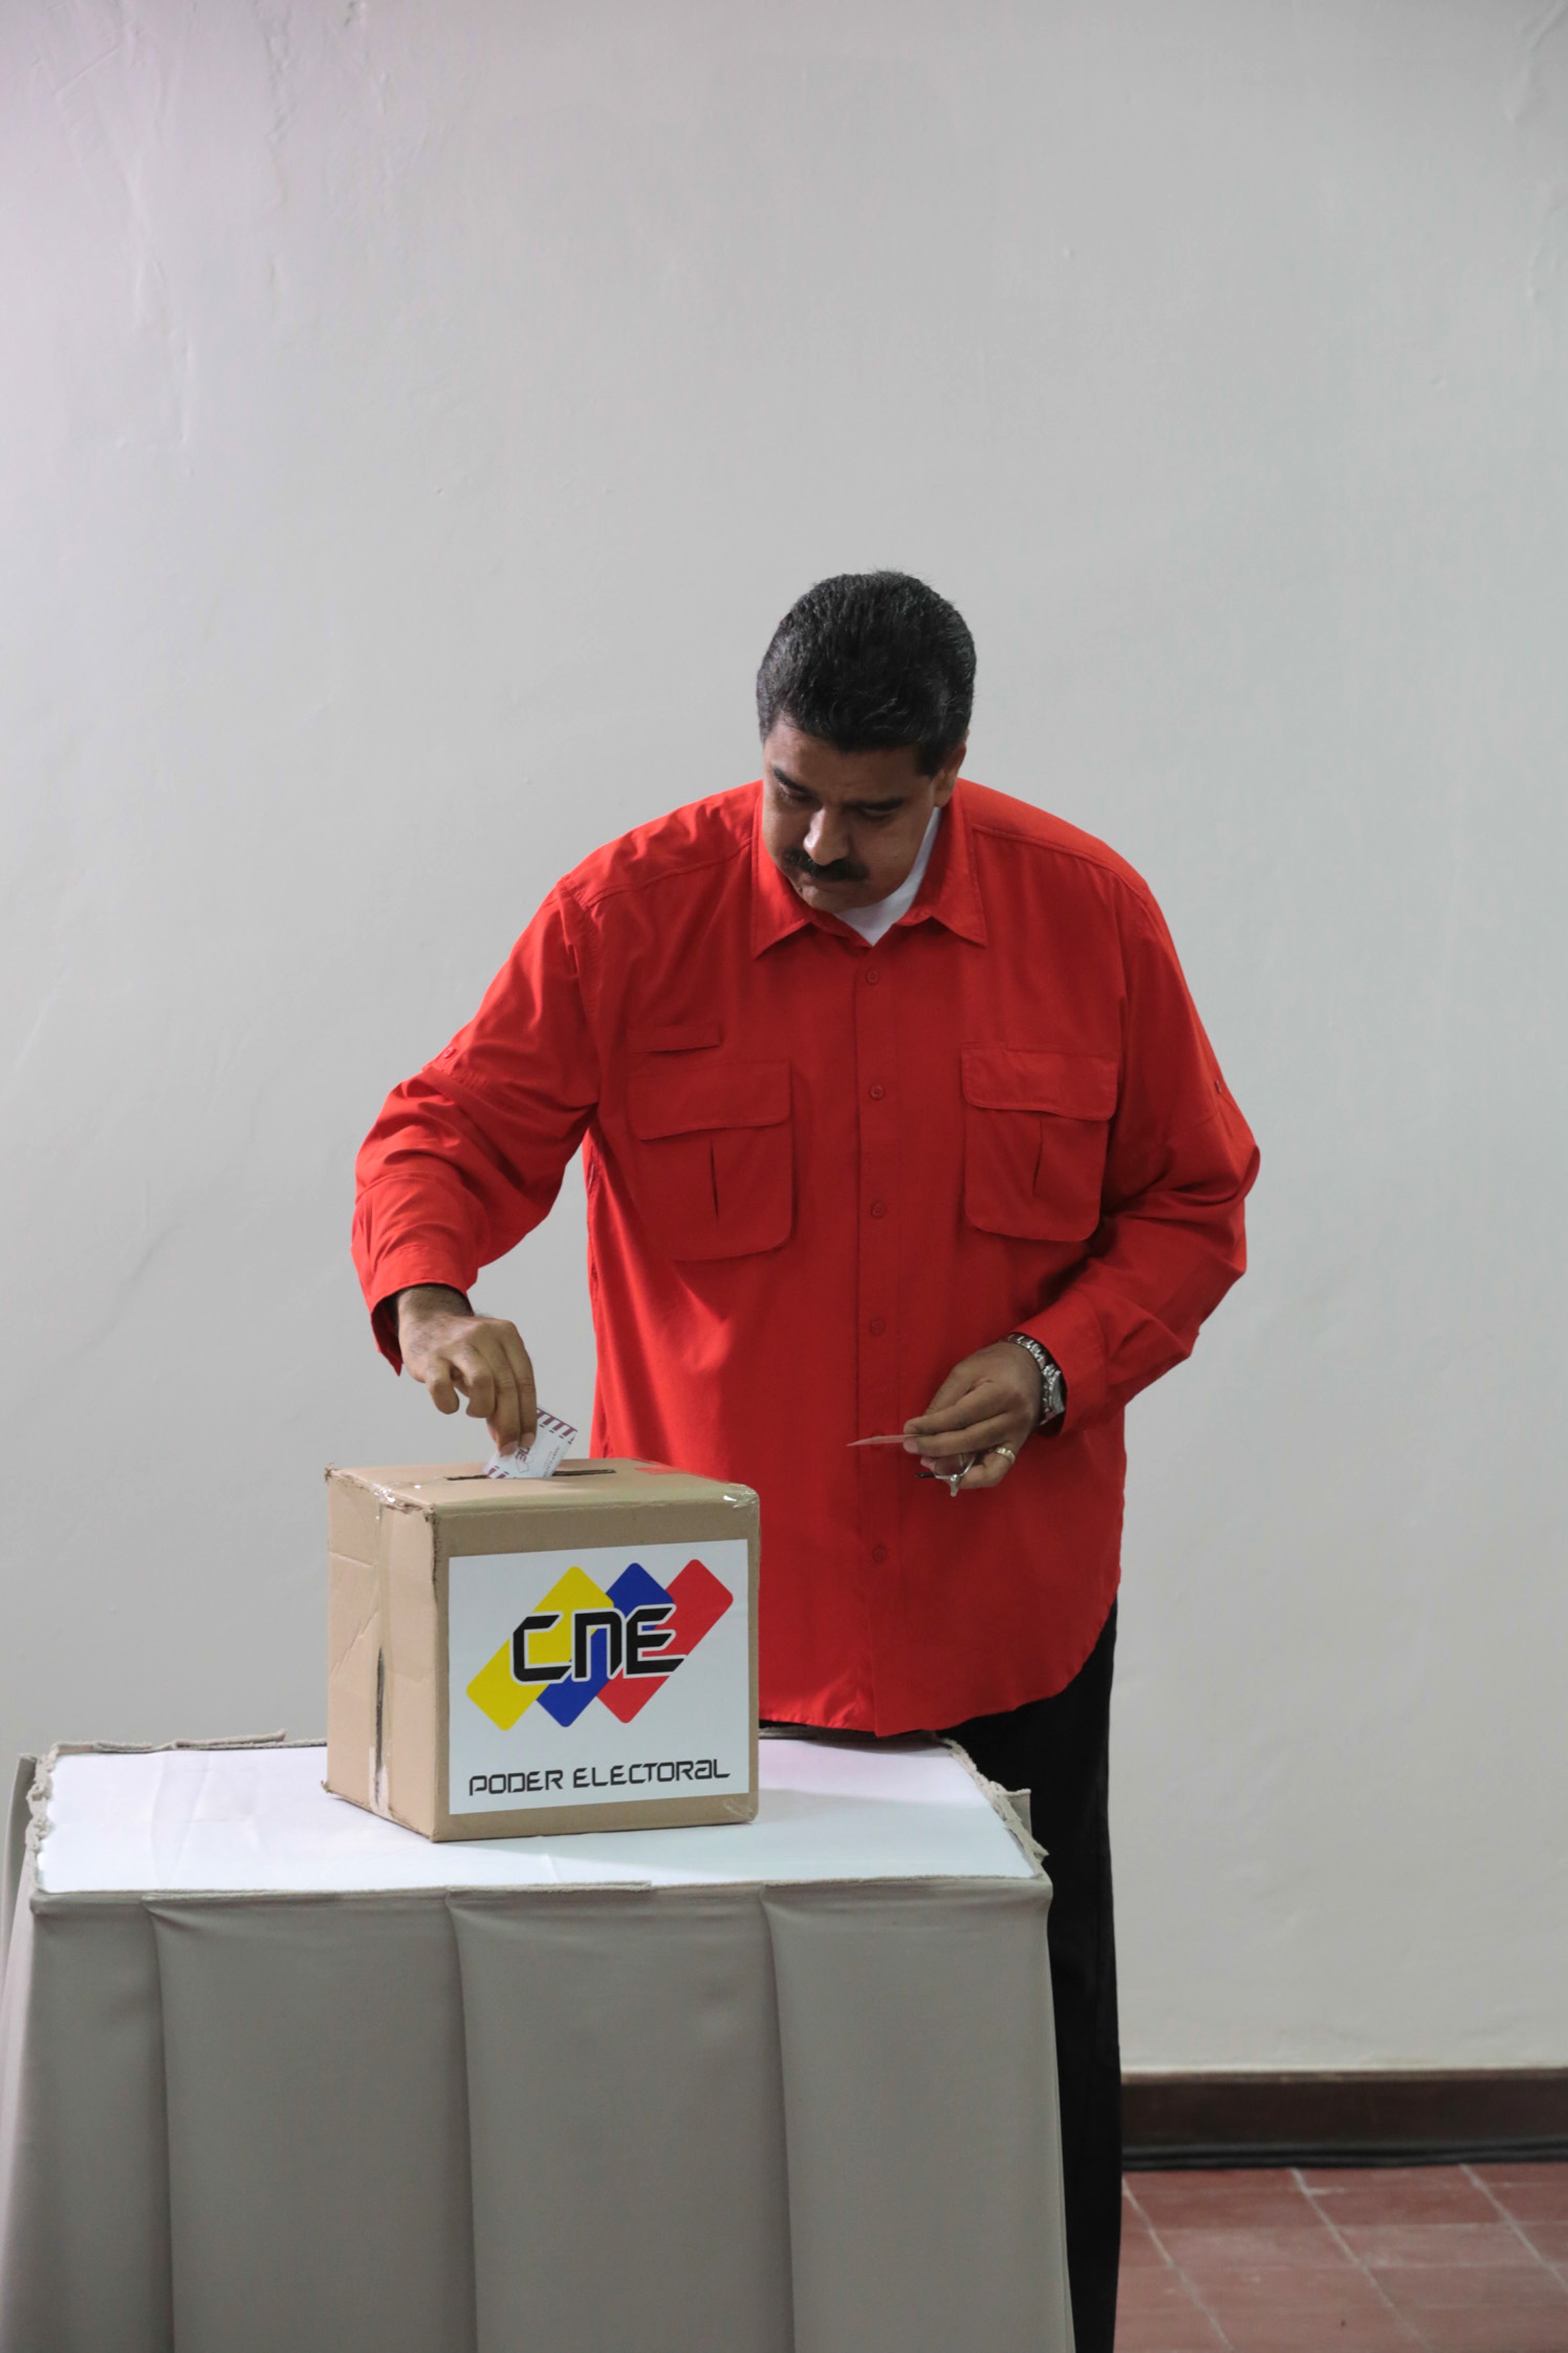 الرئيس الفنزويلى يضع ورقة الاقتراع داخل صندوق التصويت